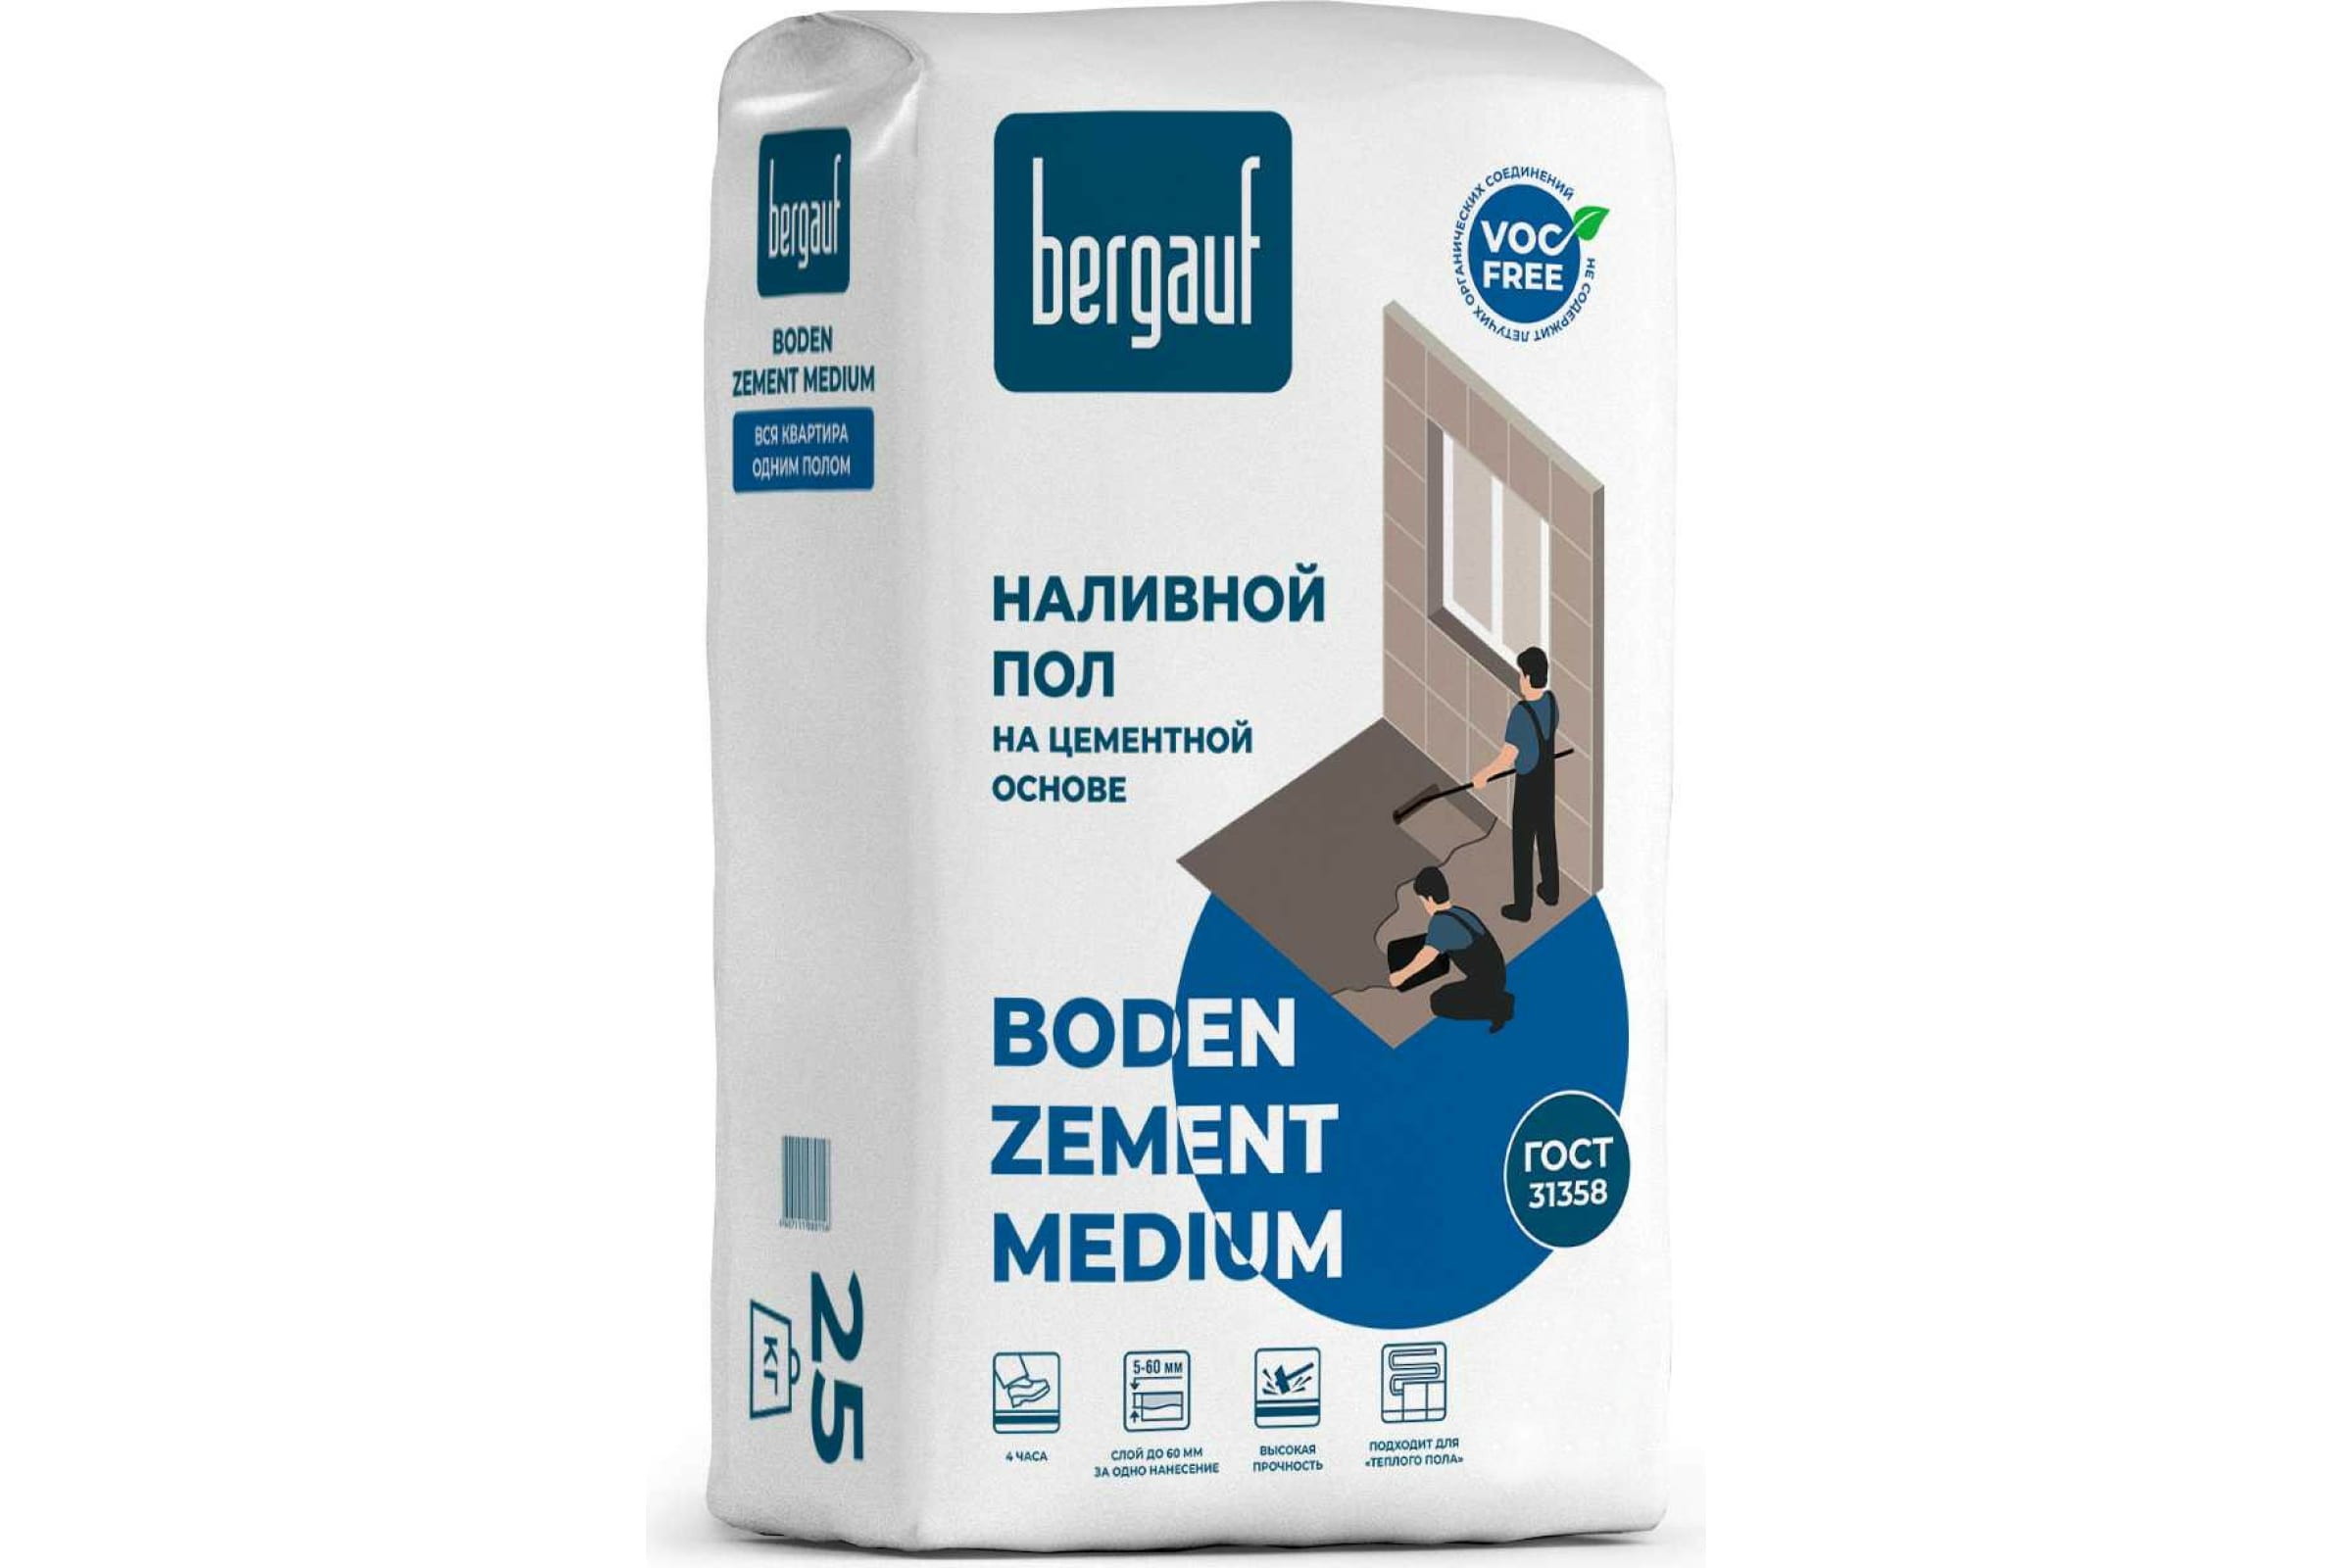 фото Bergauf наливной пол на цементной основе boden zement medium, 25 кг 1116